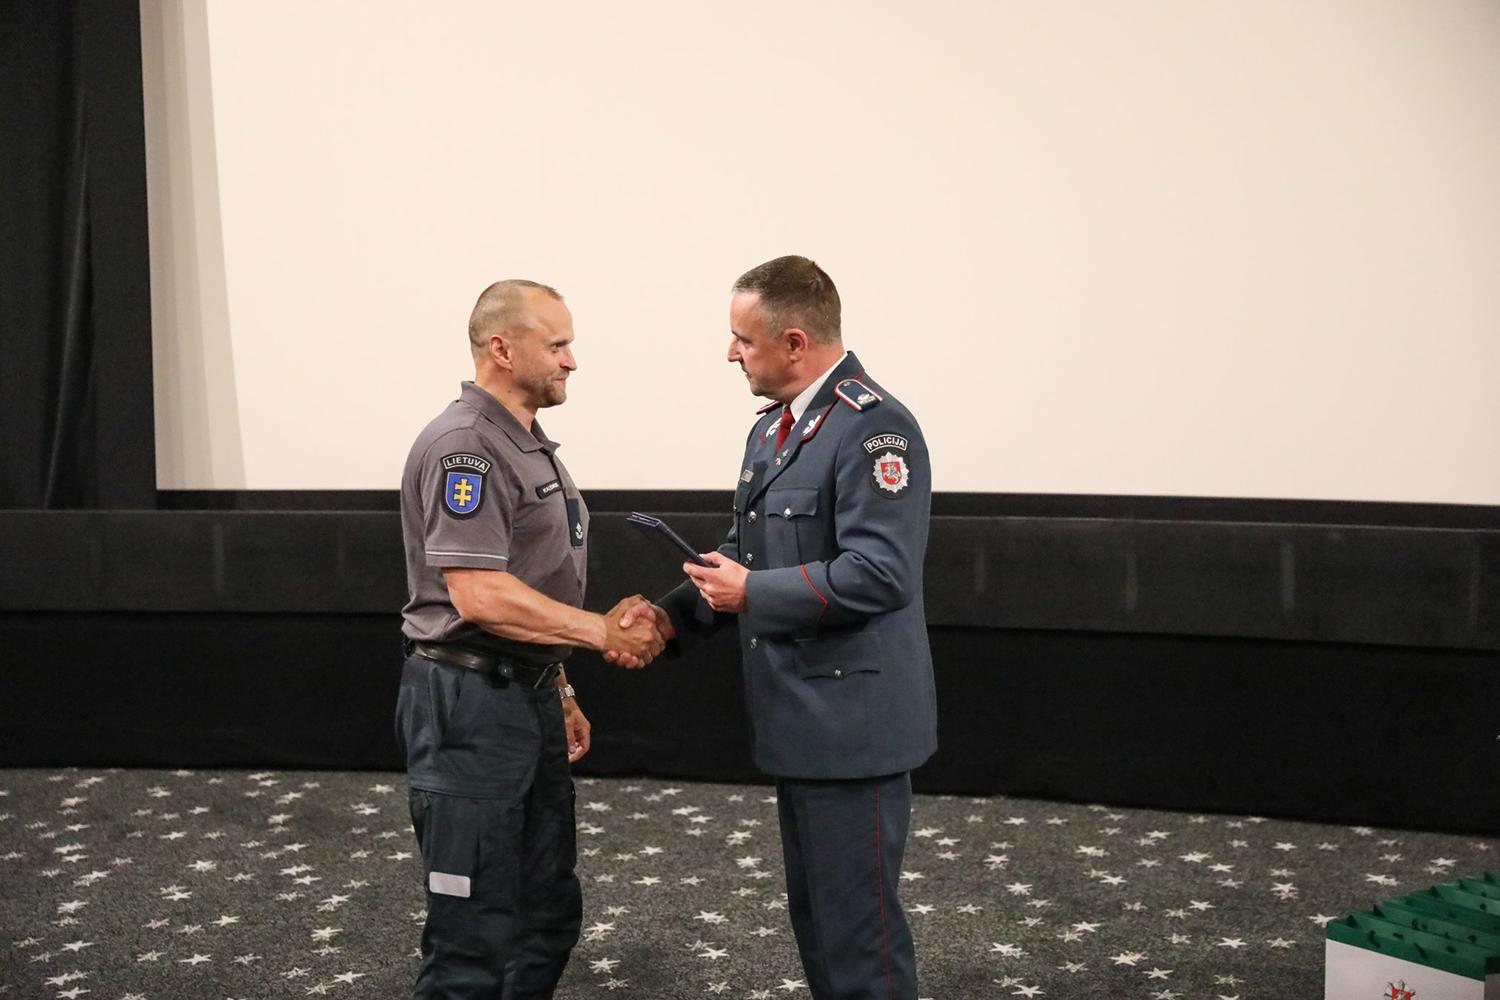 Apdovanotas I-ojo laipsnio policijos pasižymėjimo ženklu / Ukmergės RPK nuotr. Gediminui Kalesnykui įteiktas apdovanojimas.